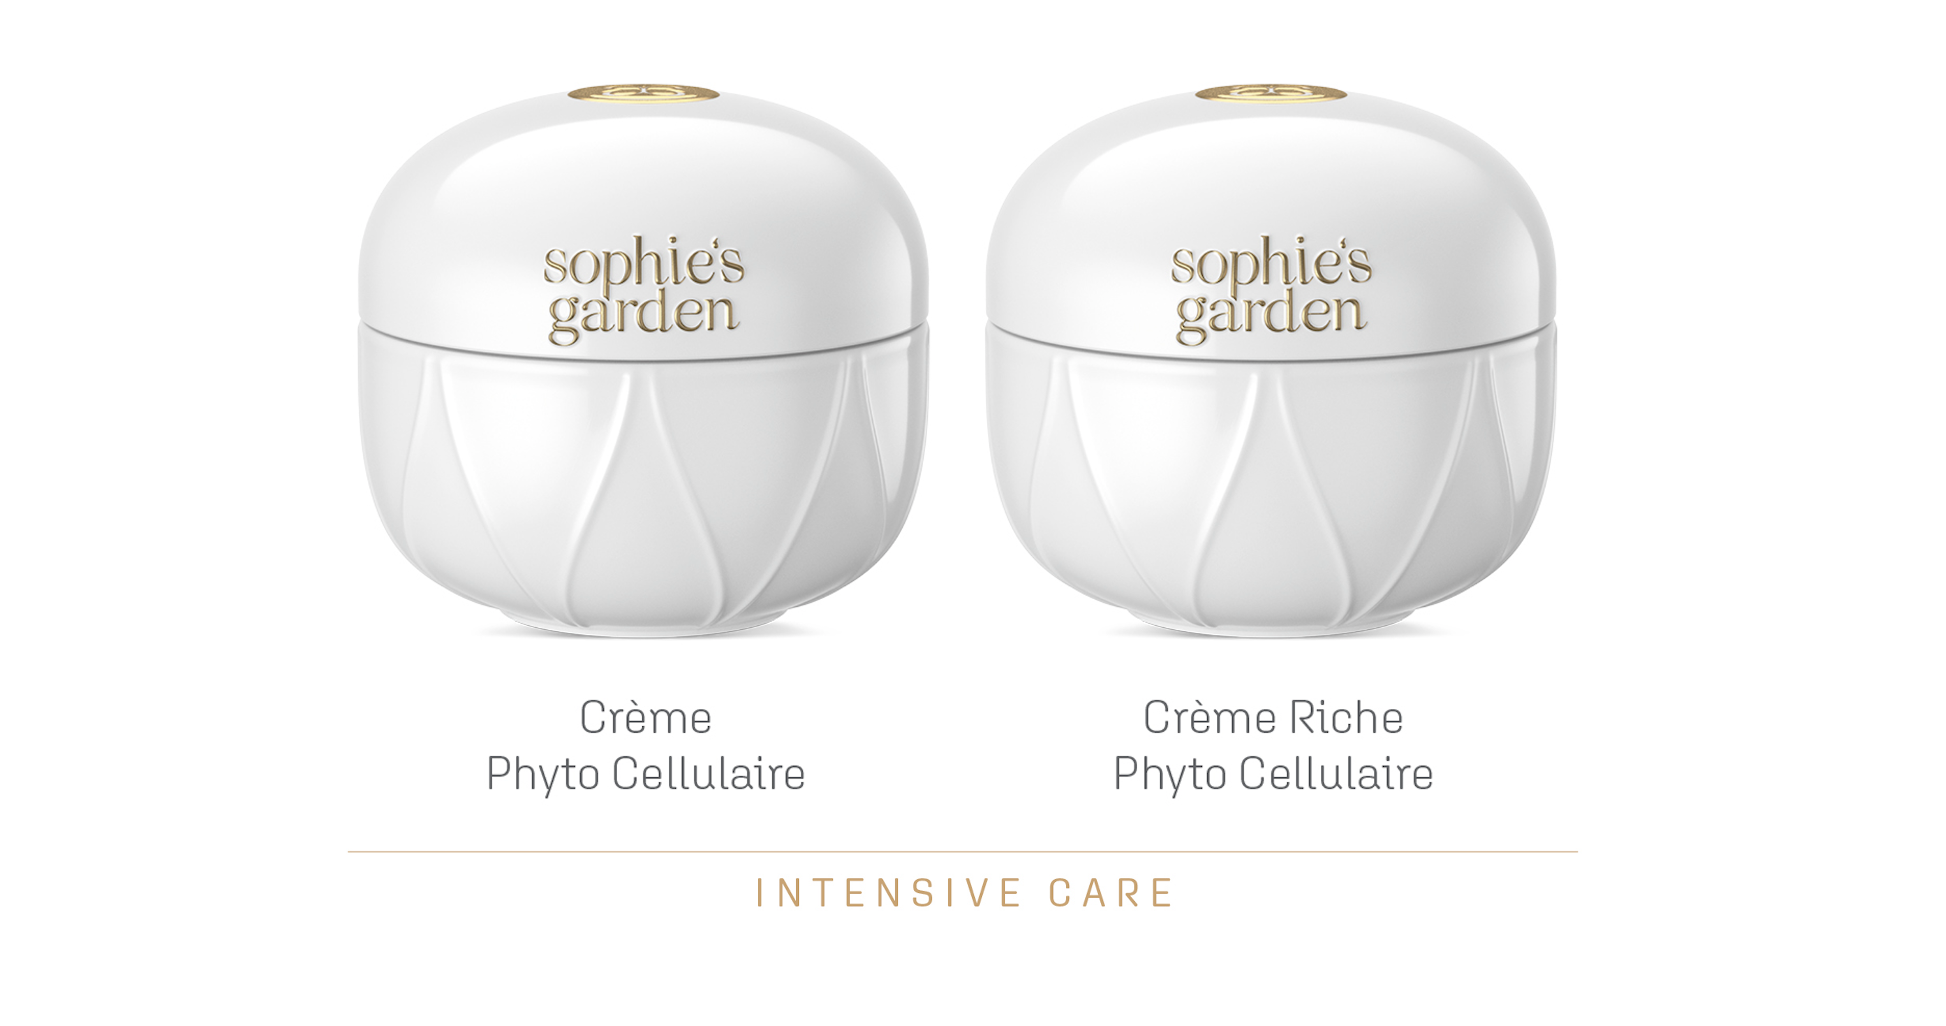 Crème Phyto Cellulaire und Crème Riche Phyto Cellulaire I © SOPHIE'S GARDEN